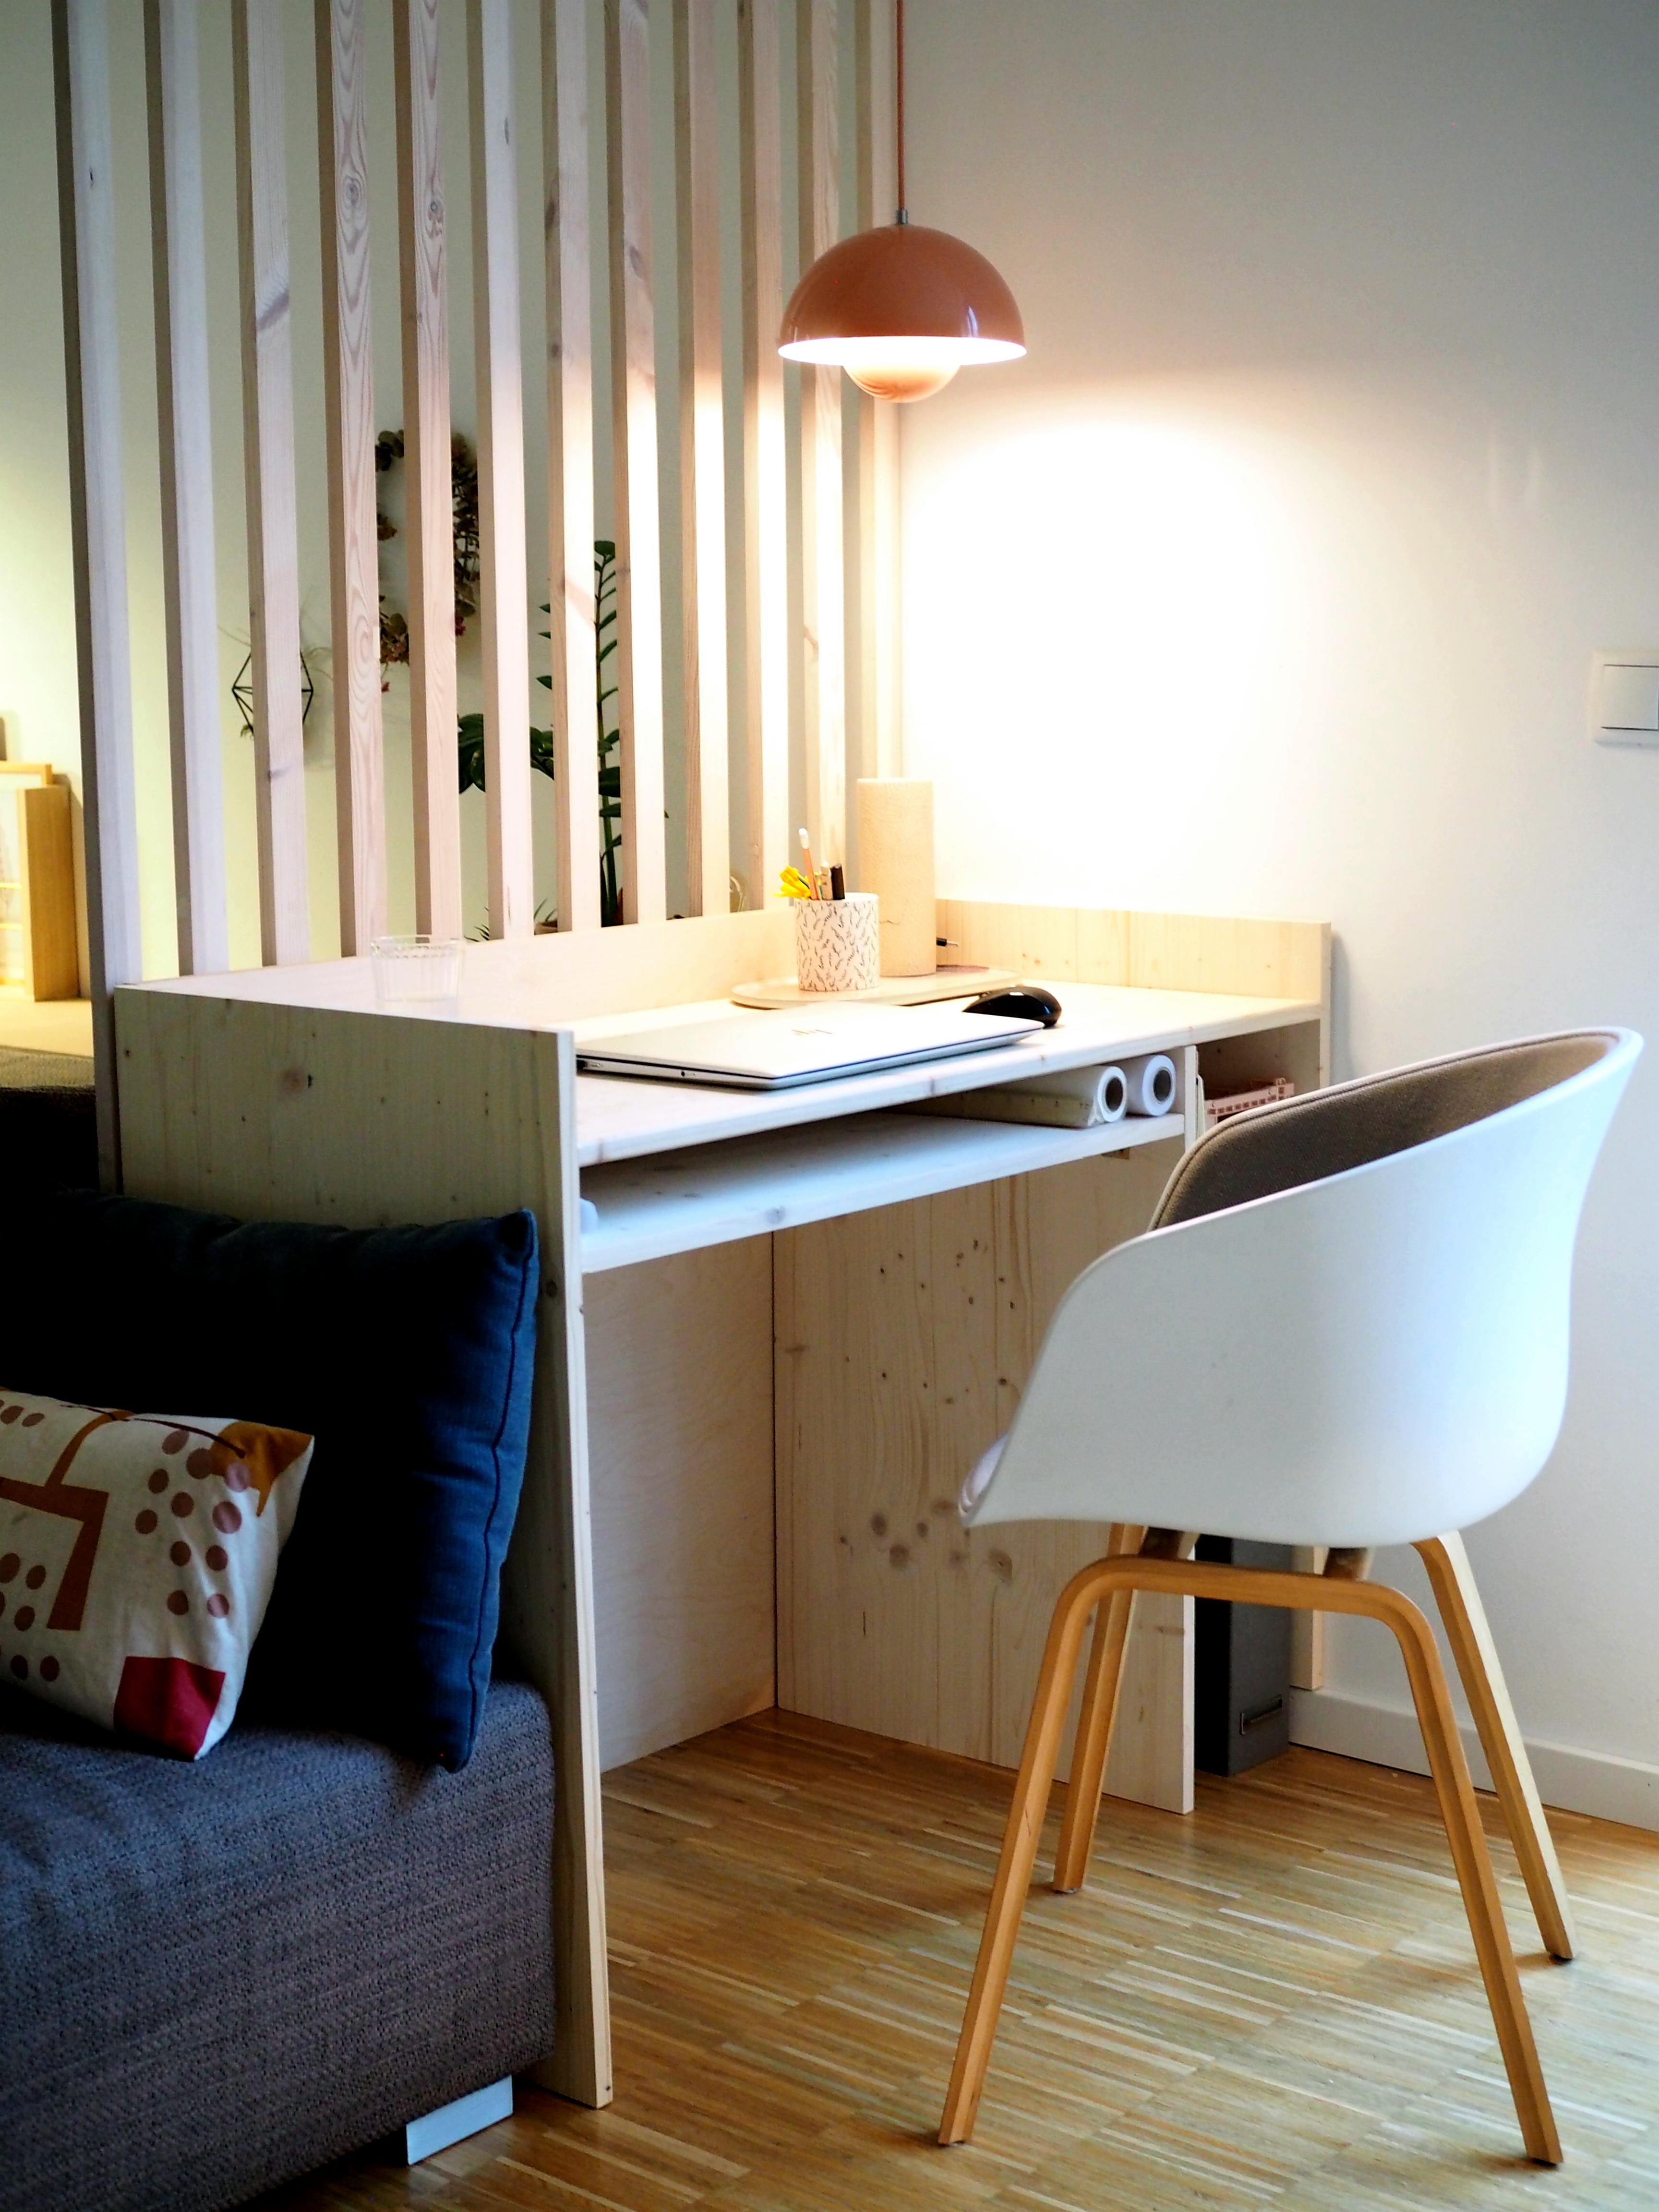 Juhuu!! Endlich ein eigener kleiner Schreibtisch!!
#homeoffice #workspace #schreibtisch